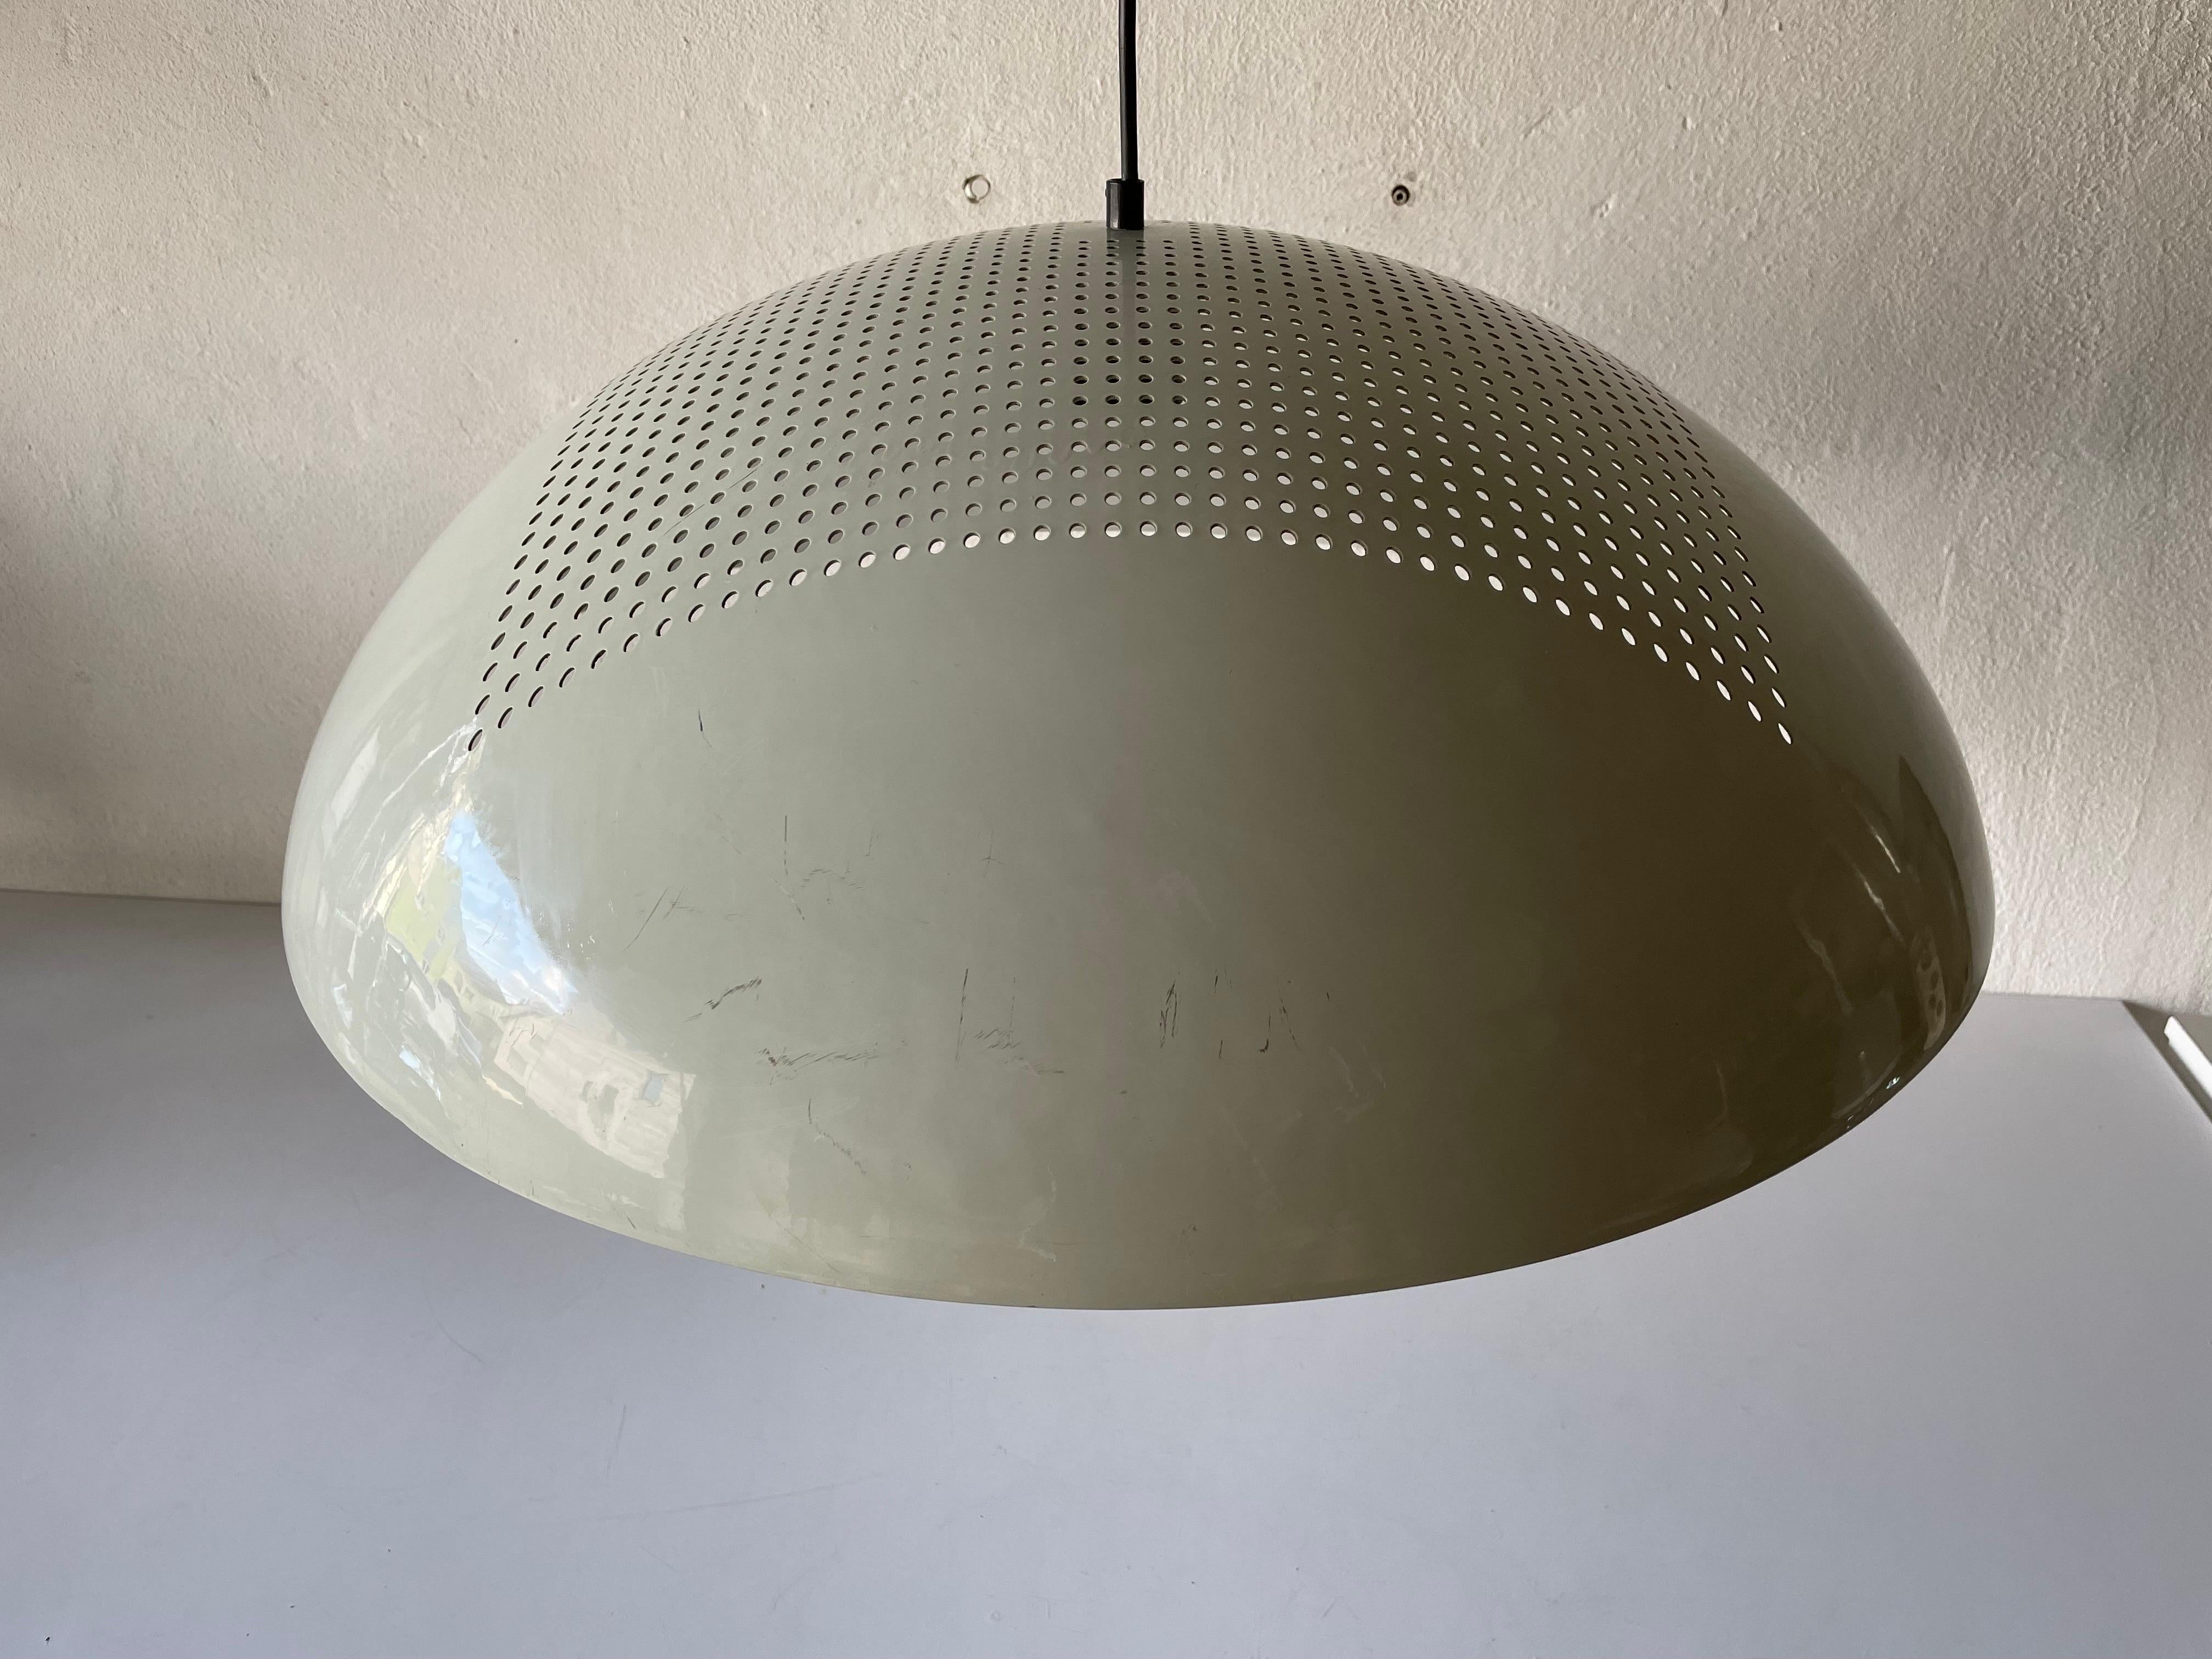 Große weiße Metall-Hängeleuchte Piuluce s.r.l Vicenza, 1960er Jahre, Italien

Der Lampenschirm ist in sehr gutem Vintage-Zustand.

Diese Lampe funktioniert mit E27-Glühbirnen. 
Verkabelt und geeignet für 220V und 110V für alle